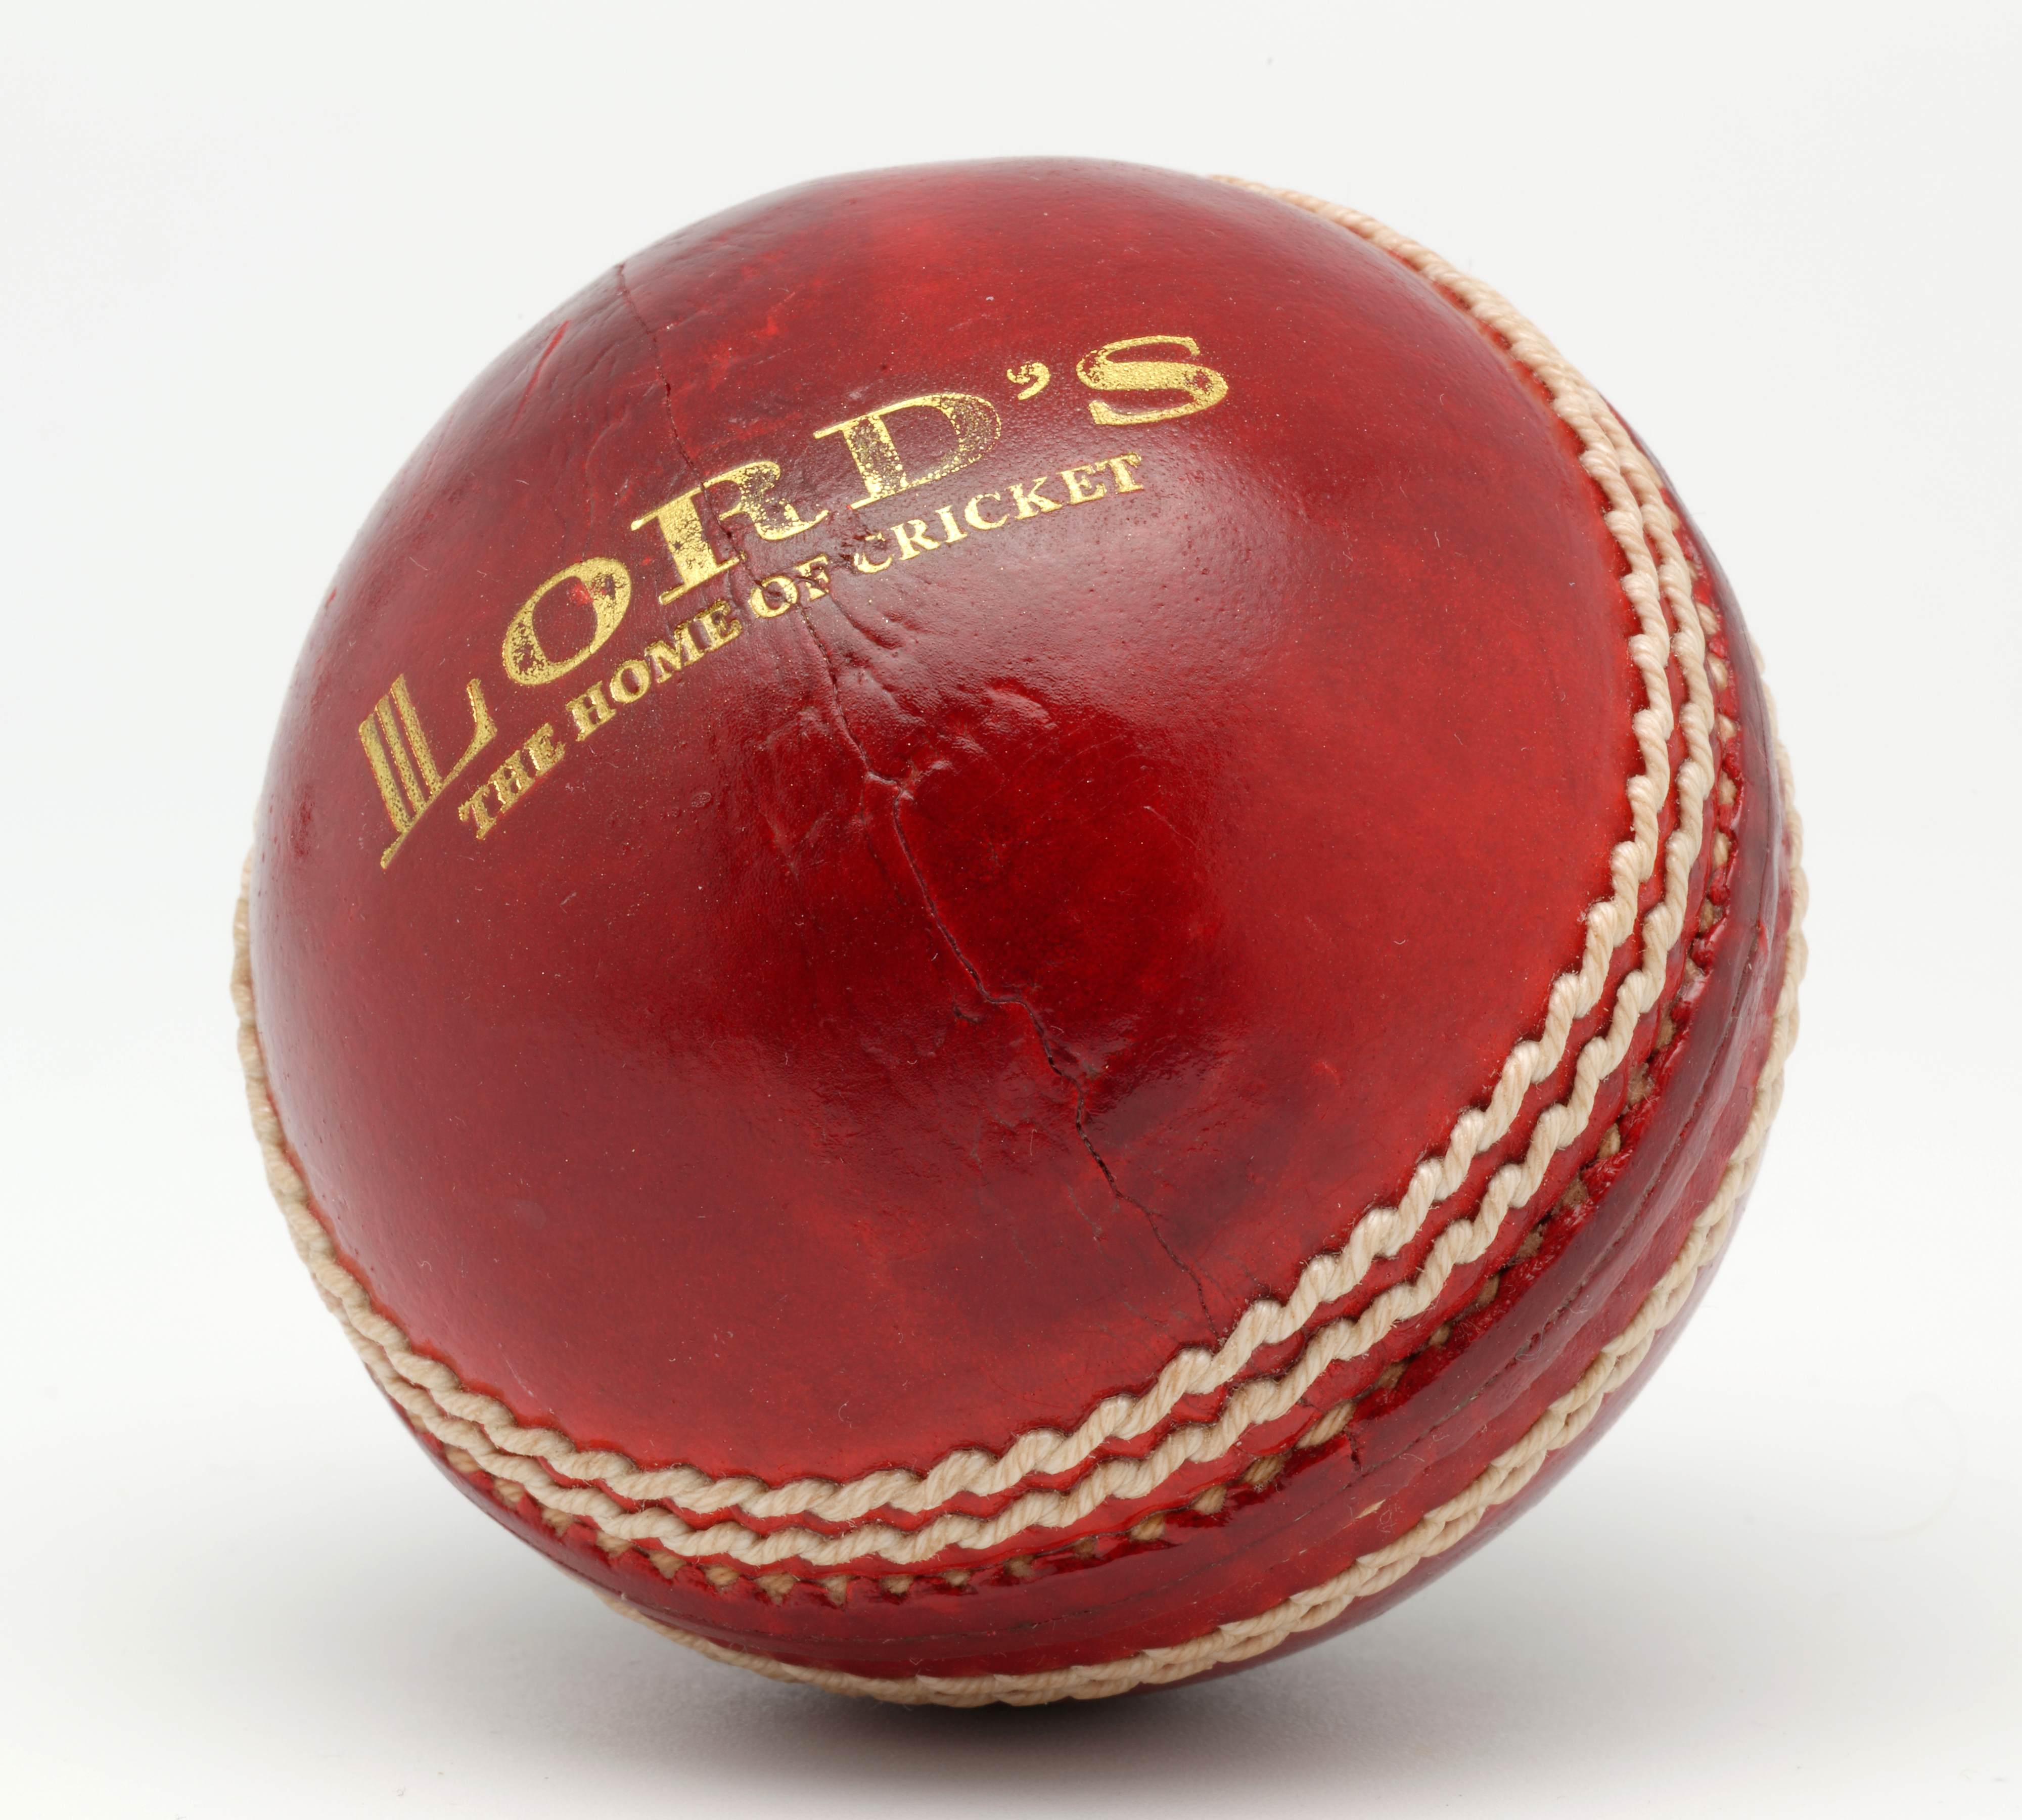 Grace match junior cricket ball